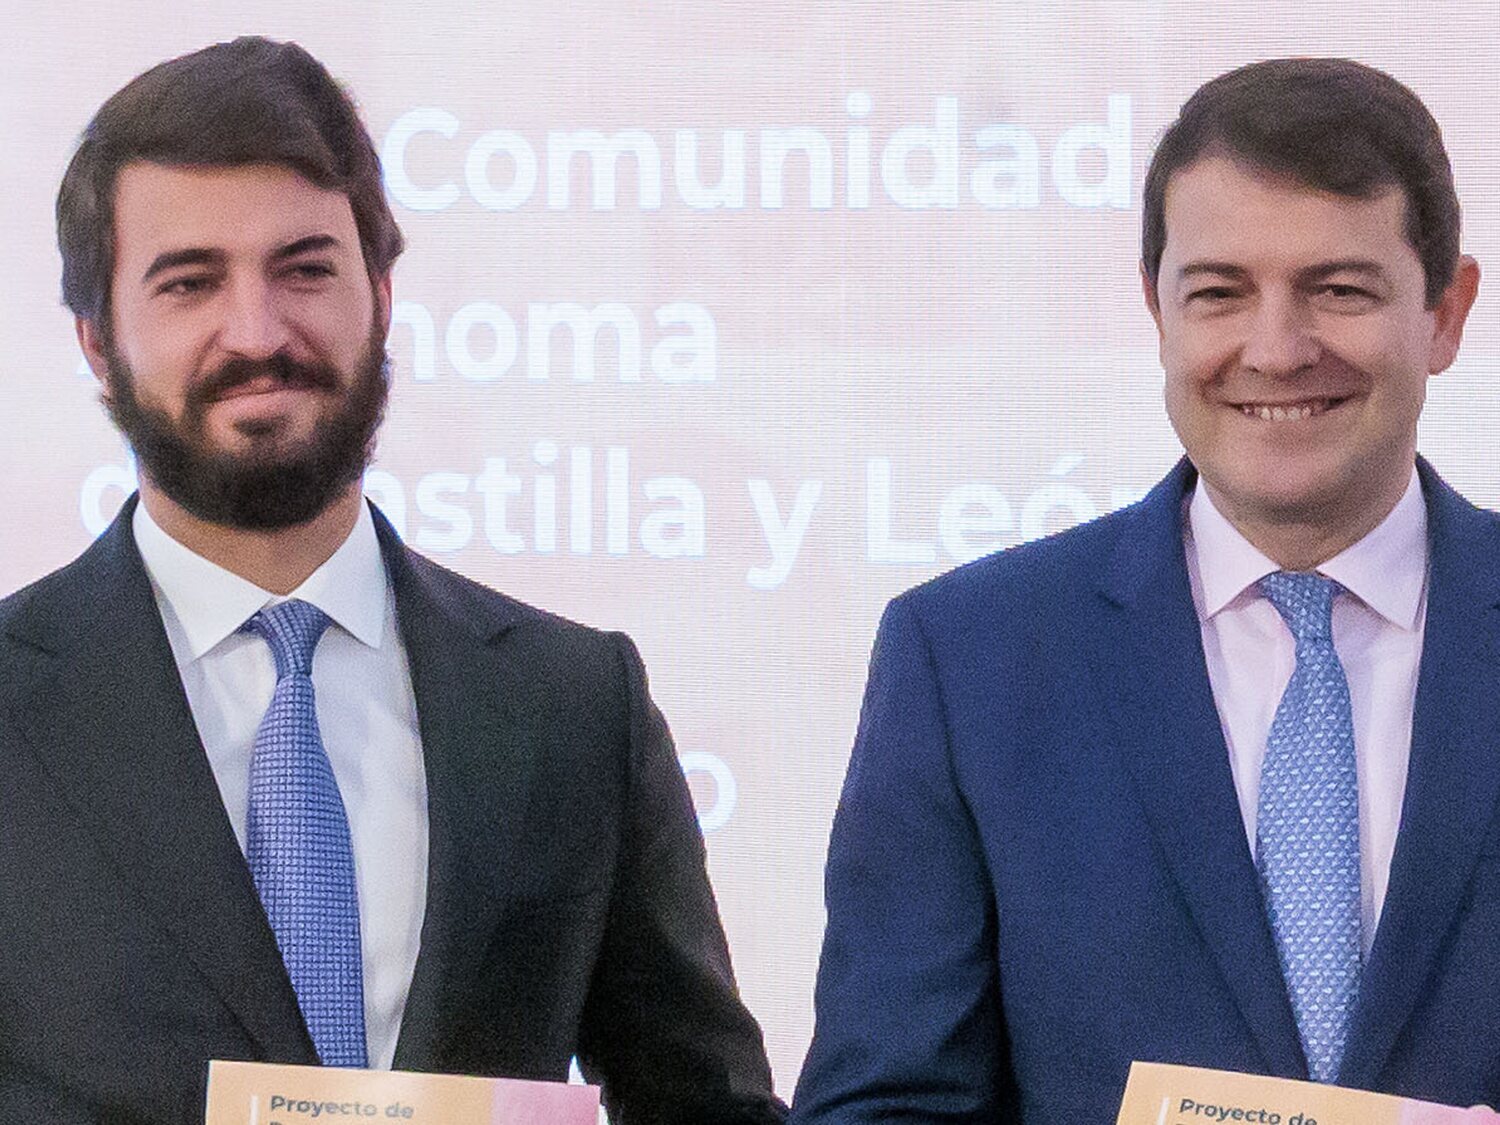 CCOO y UGT piden aplicar el 155 en Castilla y León por "rebeldía"